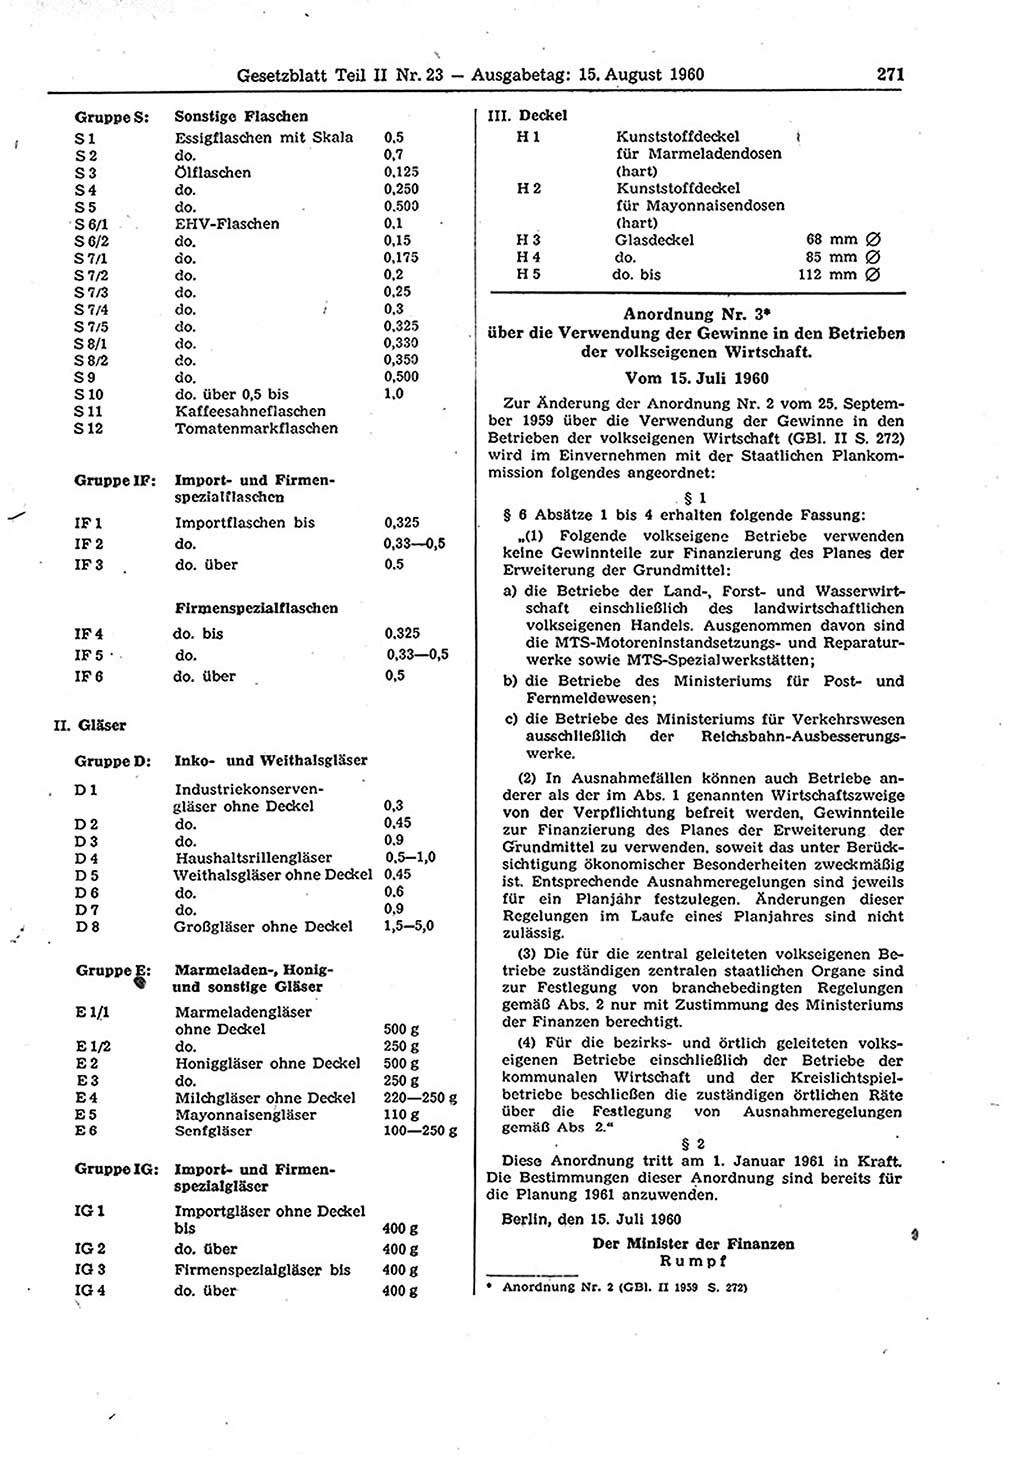 Gesetzblatt (GBl.) der Deutschen Demokratischen Republik (DDR) Teil ⅠⅠ 1960, Seite 271 (GBl. DDR ⅠⅠ 1960, S. 271)